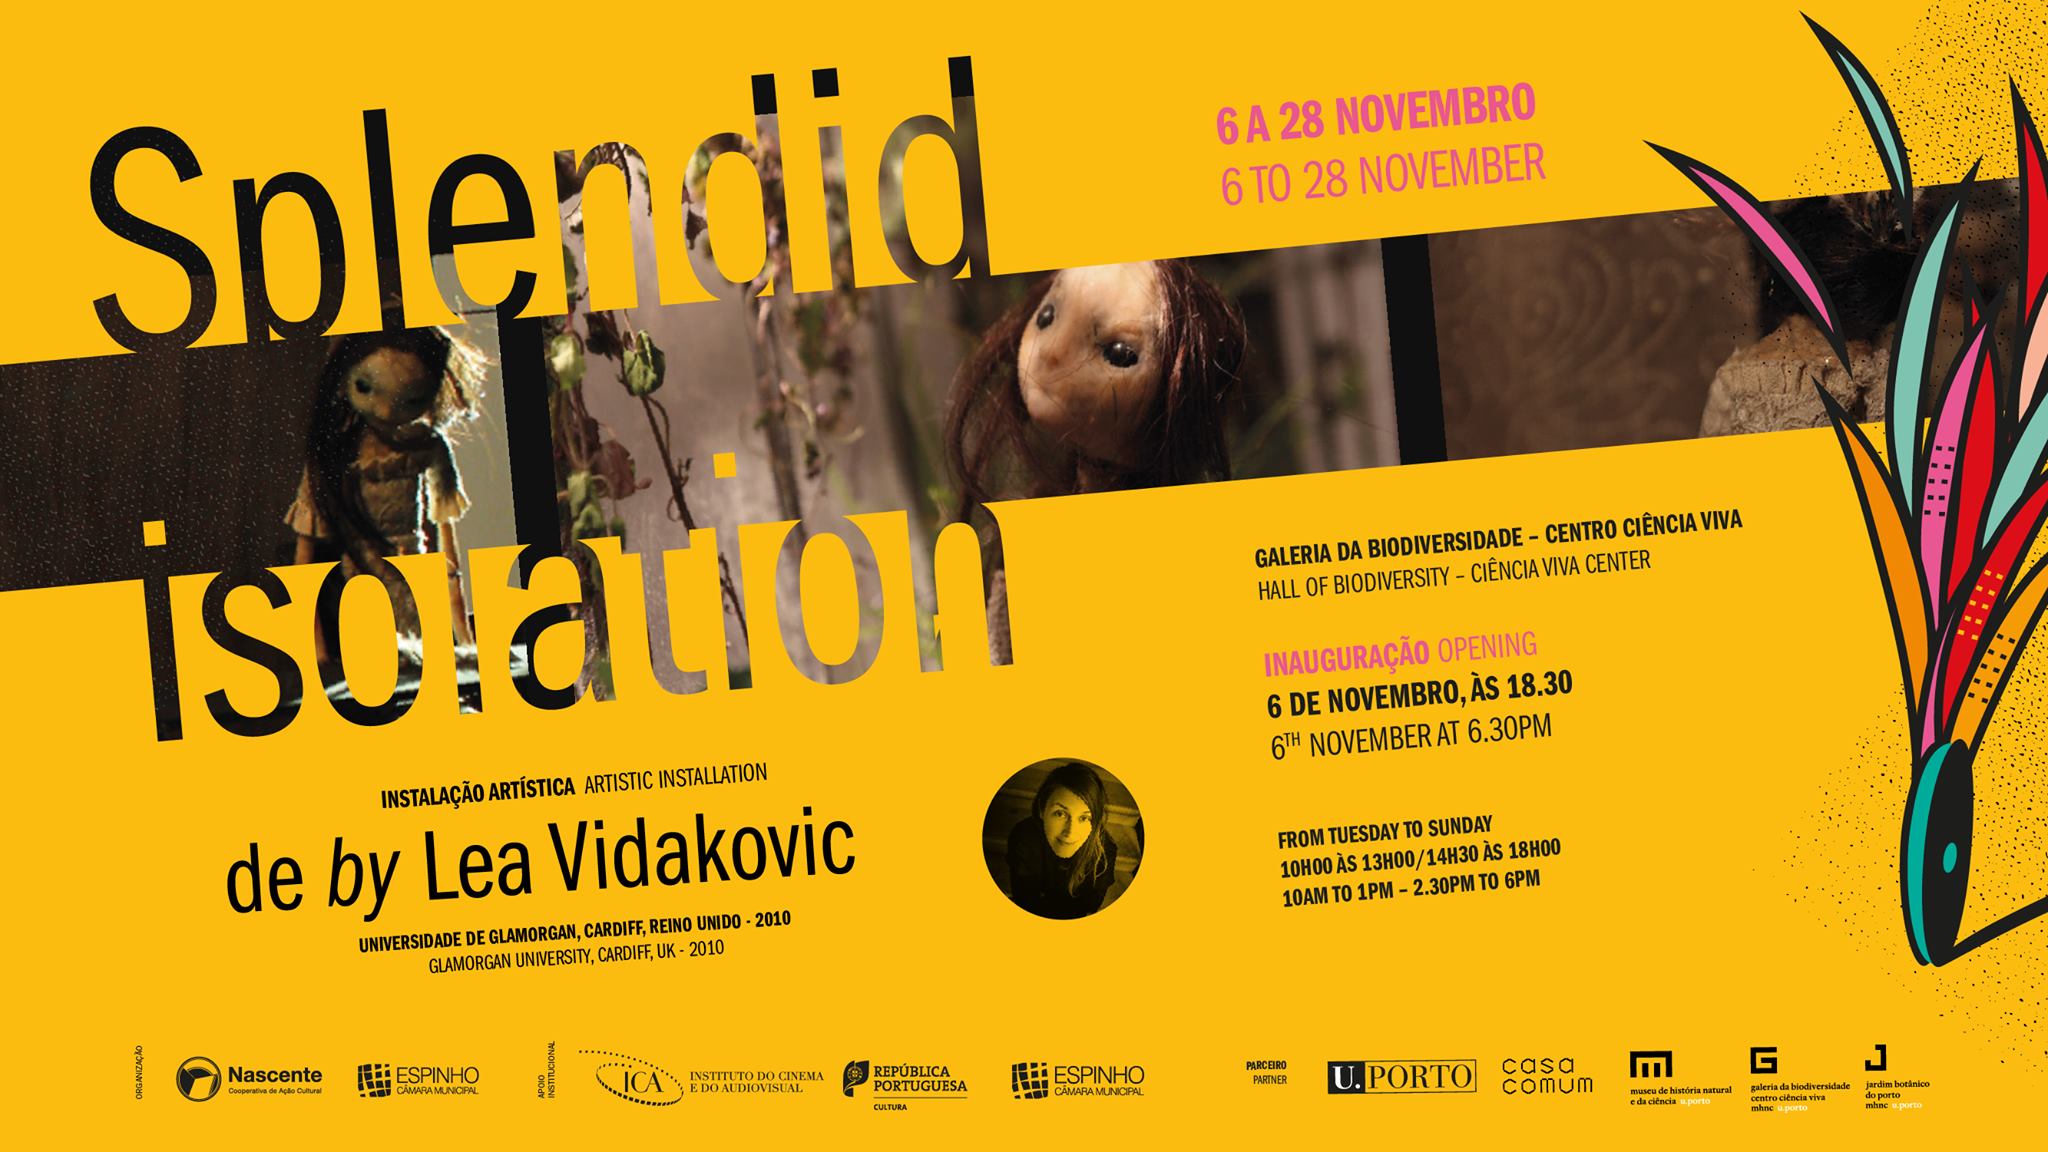 Splendid Isolation by Lea Vidakovic | Exposição